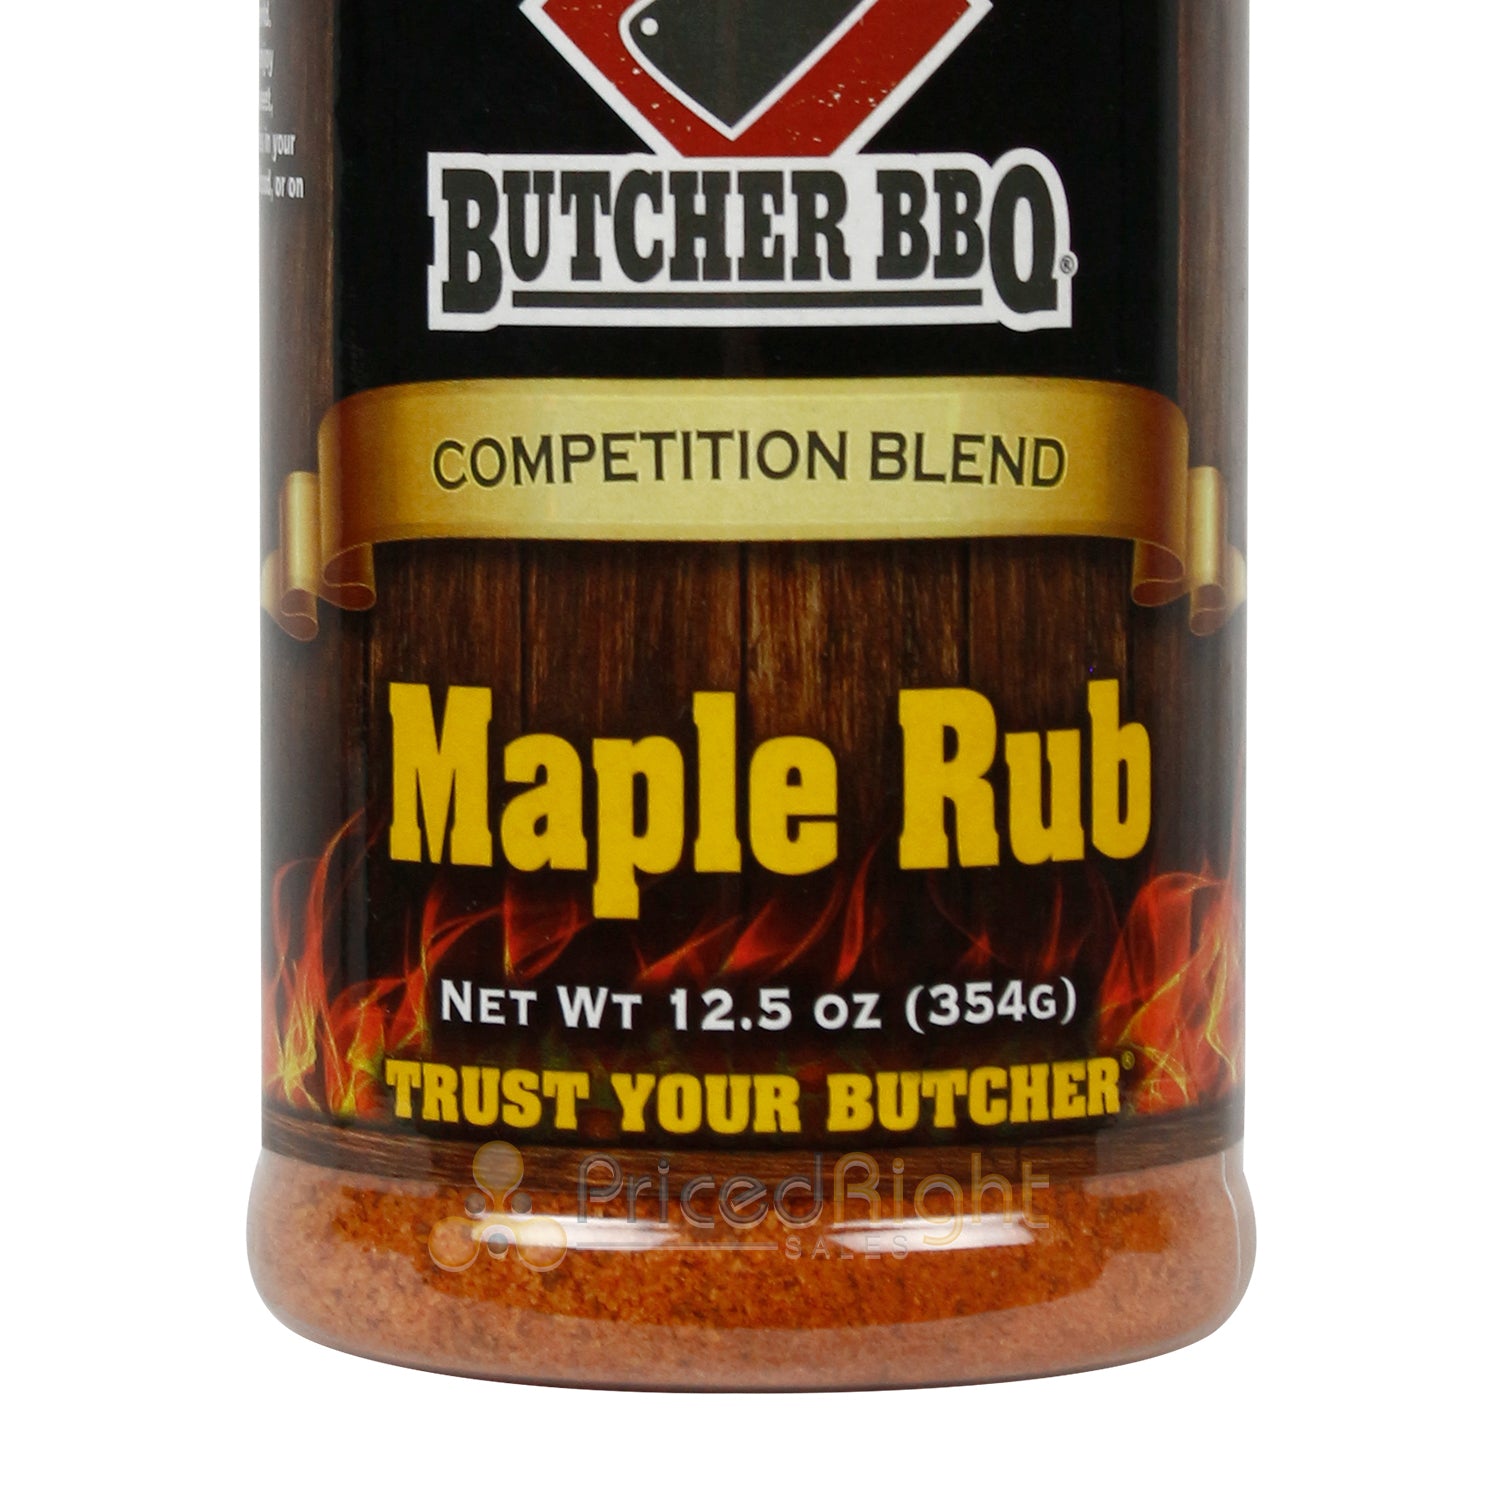 Butcher BBQ Maple Rub Seasoning Competition Blend 12.5 Oz Sweet Savory No MSG